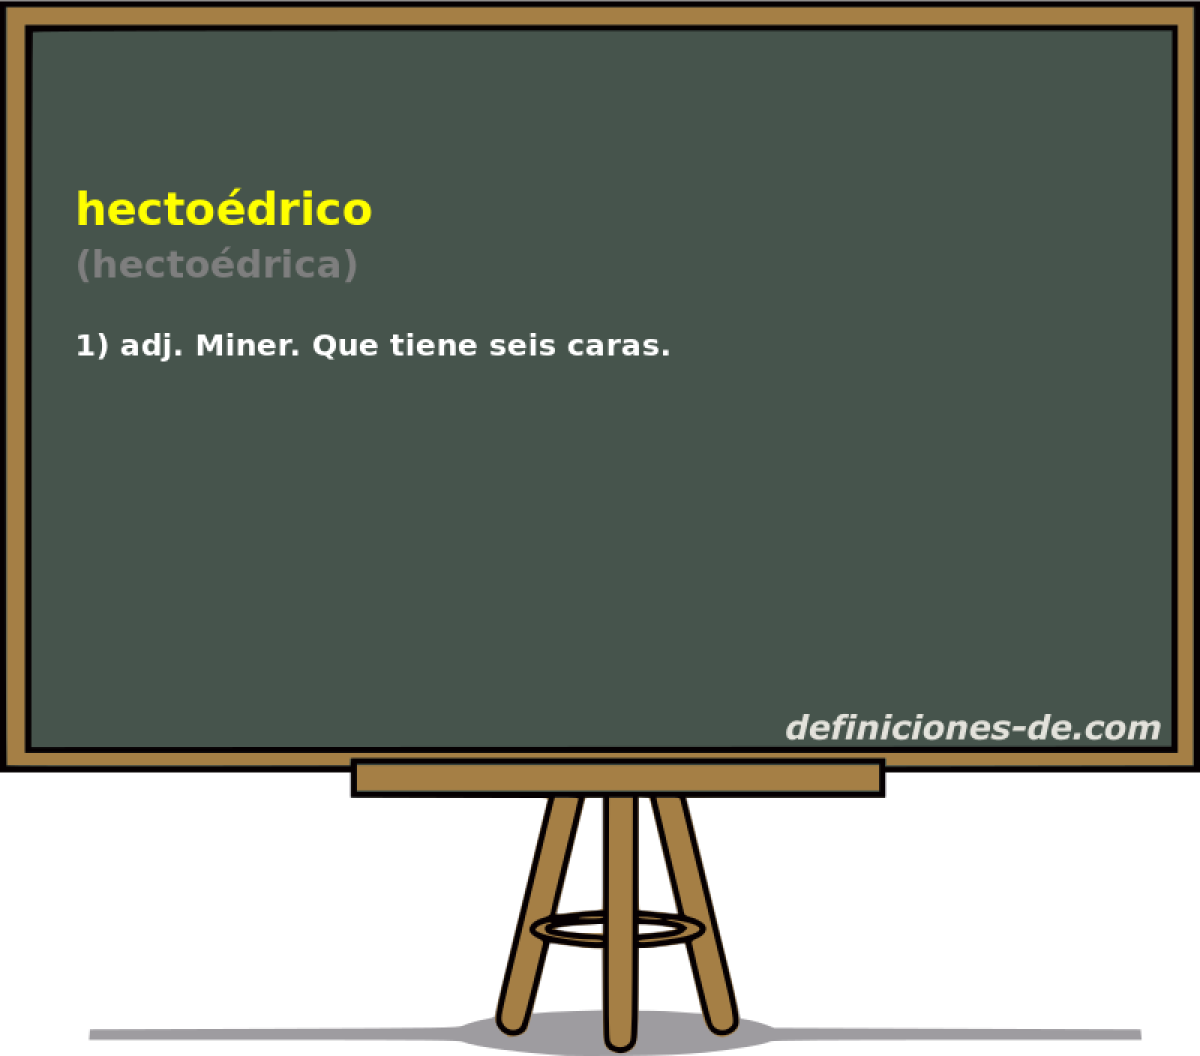 hectodrico (hectodrica)